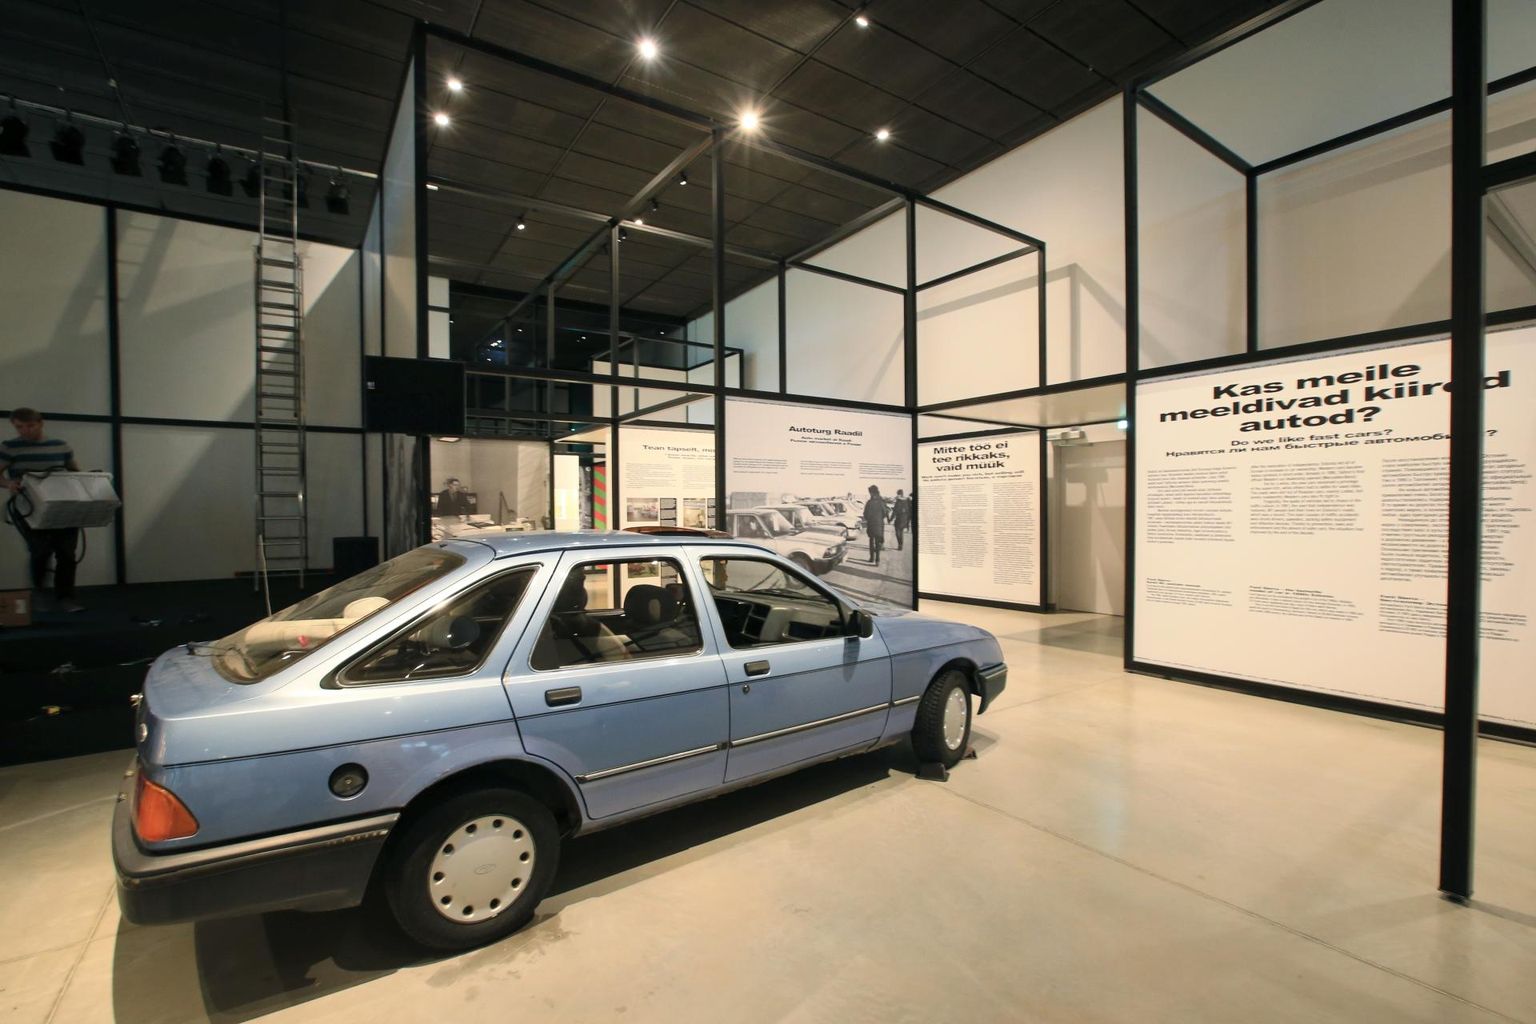 Kultuslik Ford Sierra, mis on Eesti autofolklooris kinnistunud ja jõudnud lauludessegi. Veel kaks aastakümmet tagasi kasutuses olnud tarbeesemed võivad külastajates tekitada nostalgiatunde, kuid ka küsimuse, miks neid üldse eksponeerima peaks. 